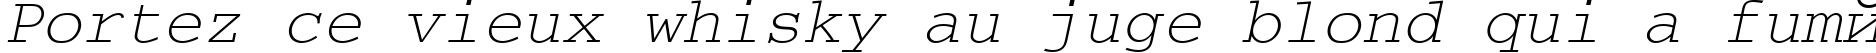 Пример написания шрифтом CourierMCY Oblique текста на французском